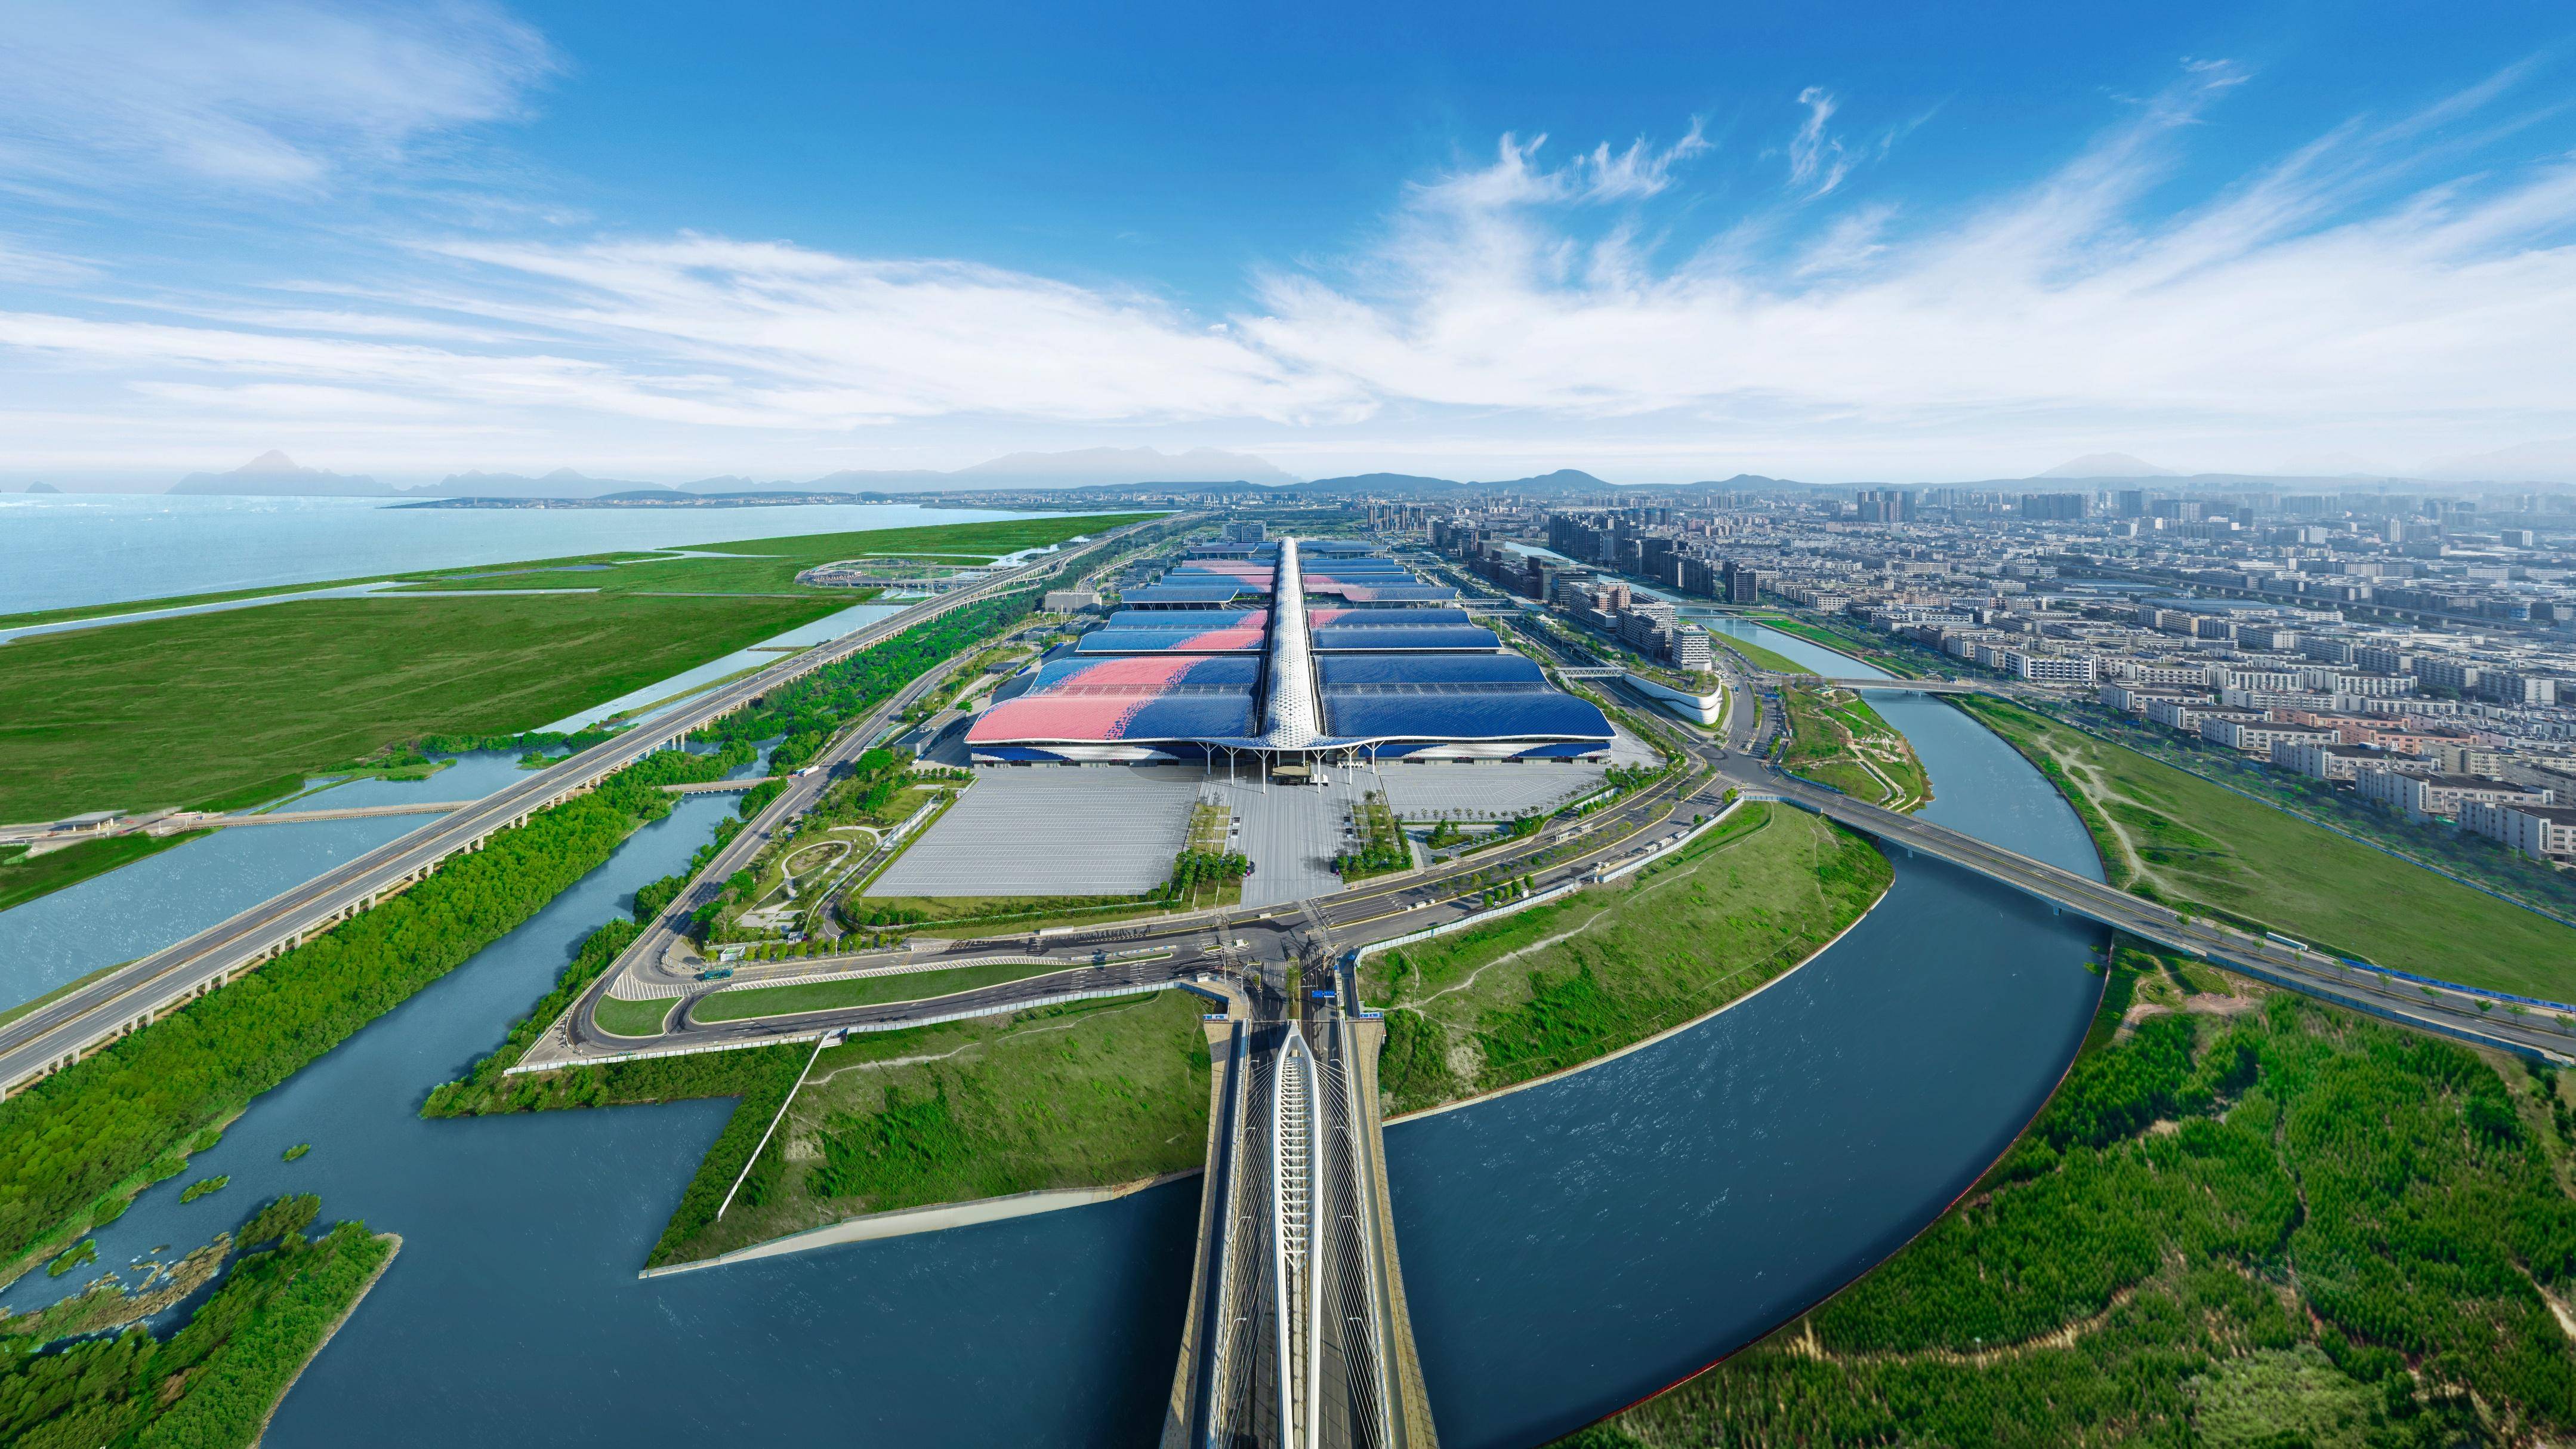 截流河两岸连接片区内多个水域,依次串联起全球最大会展中心,海洋新城